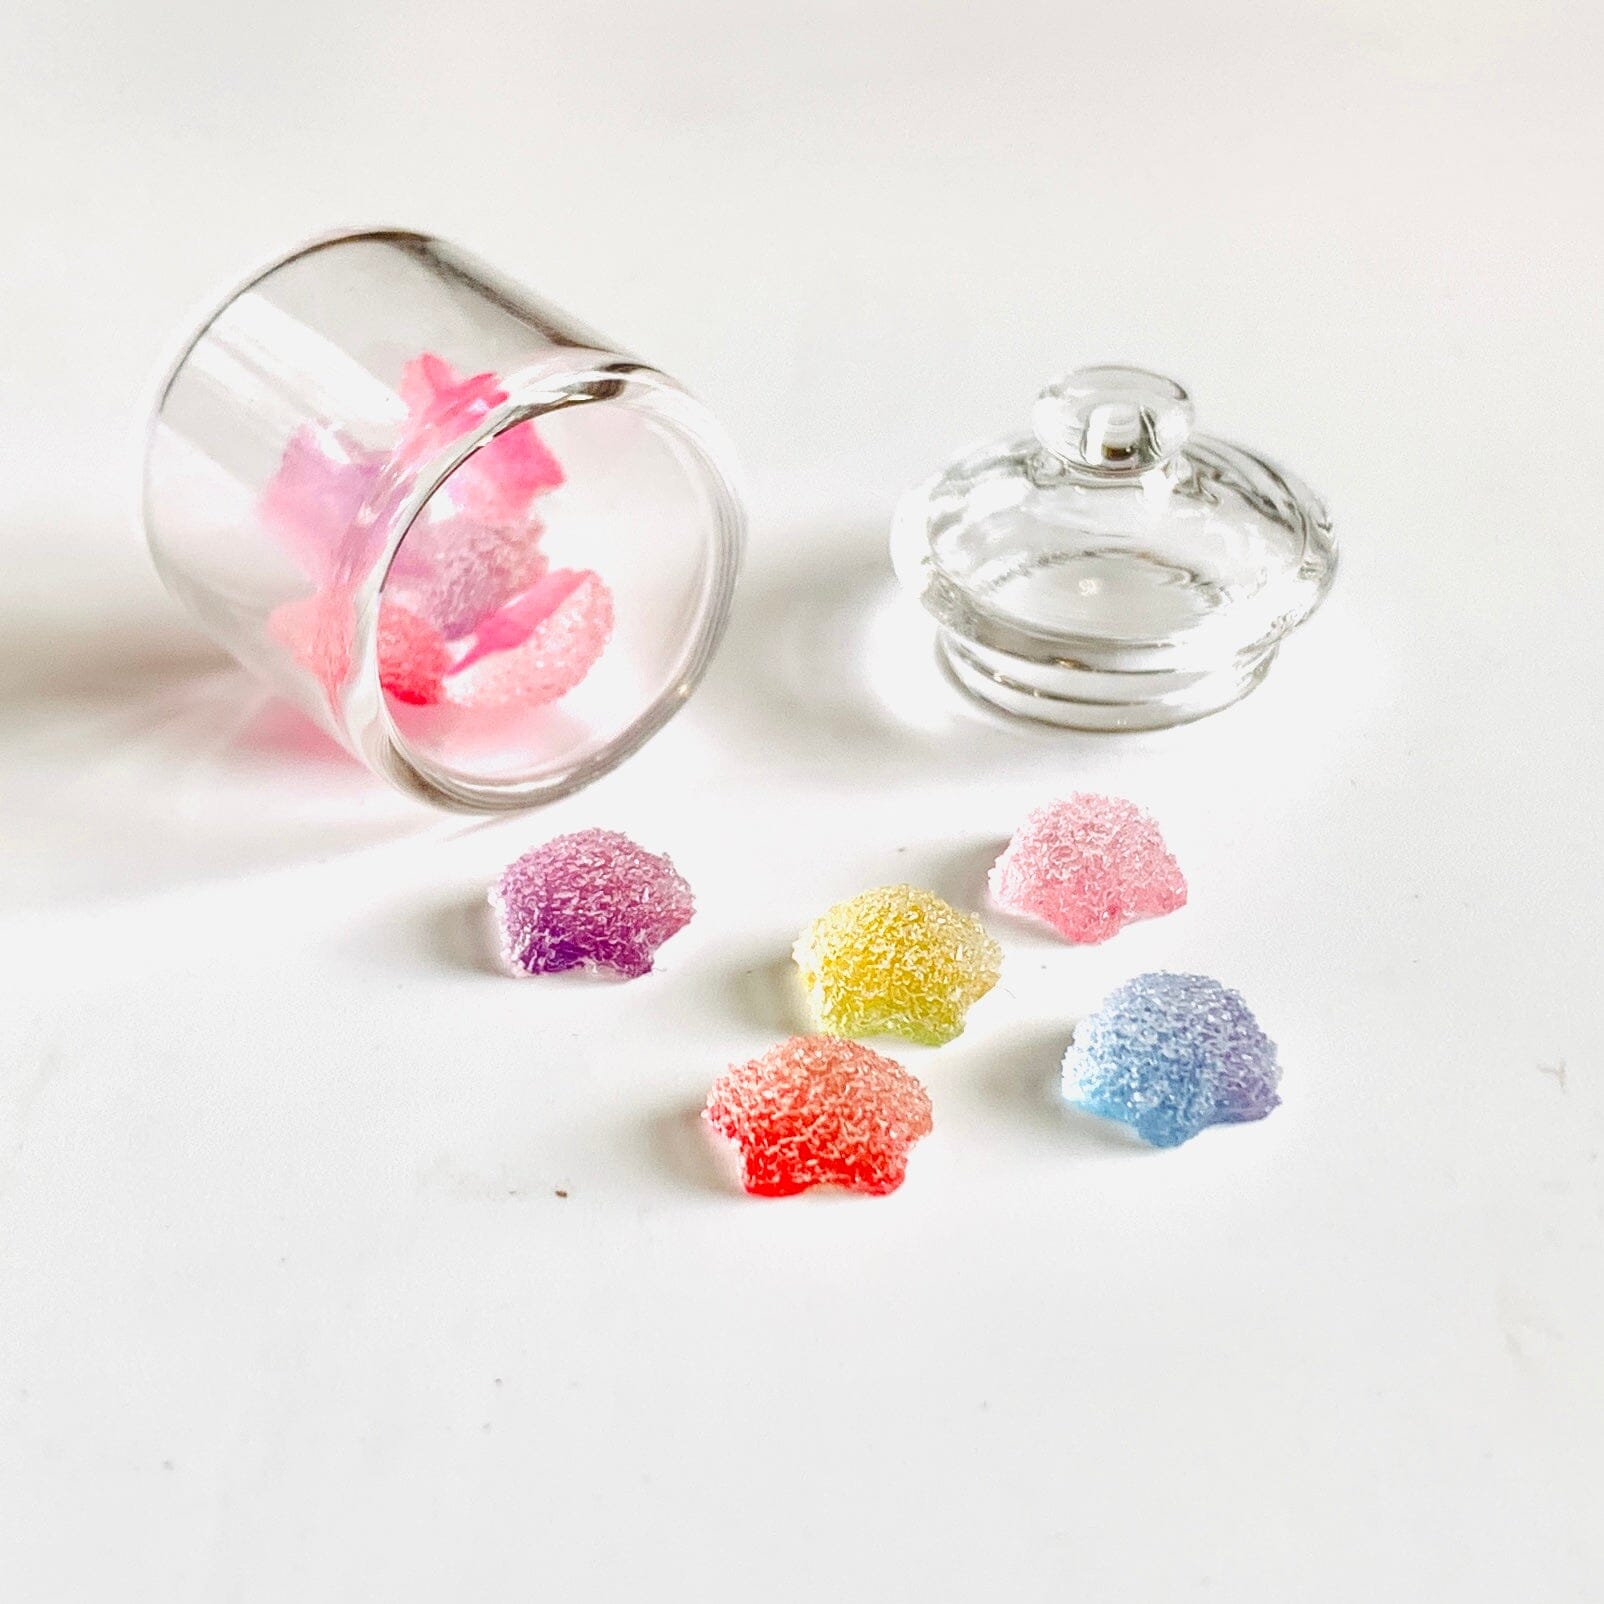 Tiniest Jar of Gumdrops, Stars Miniature - 